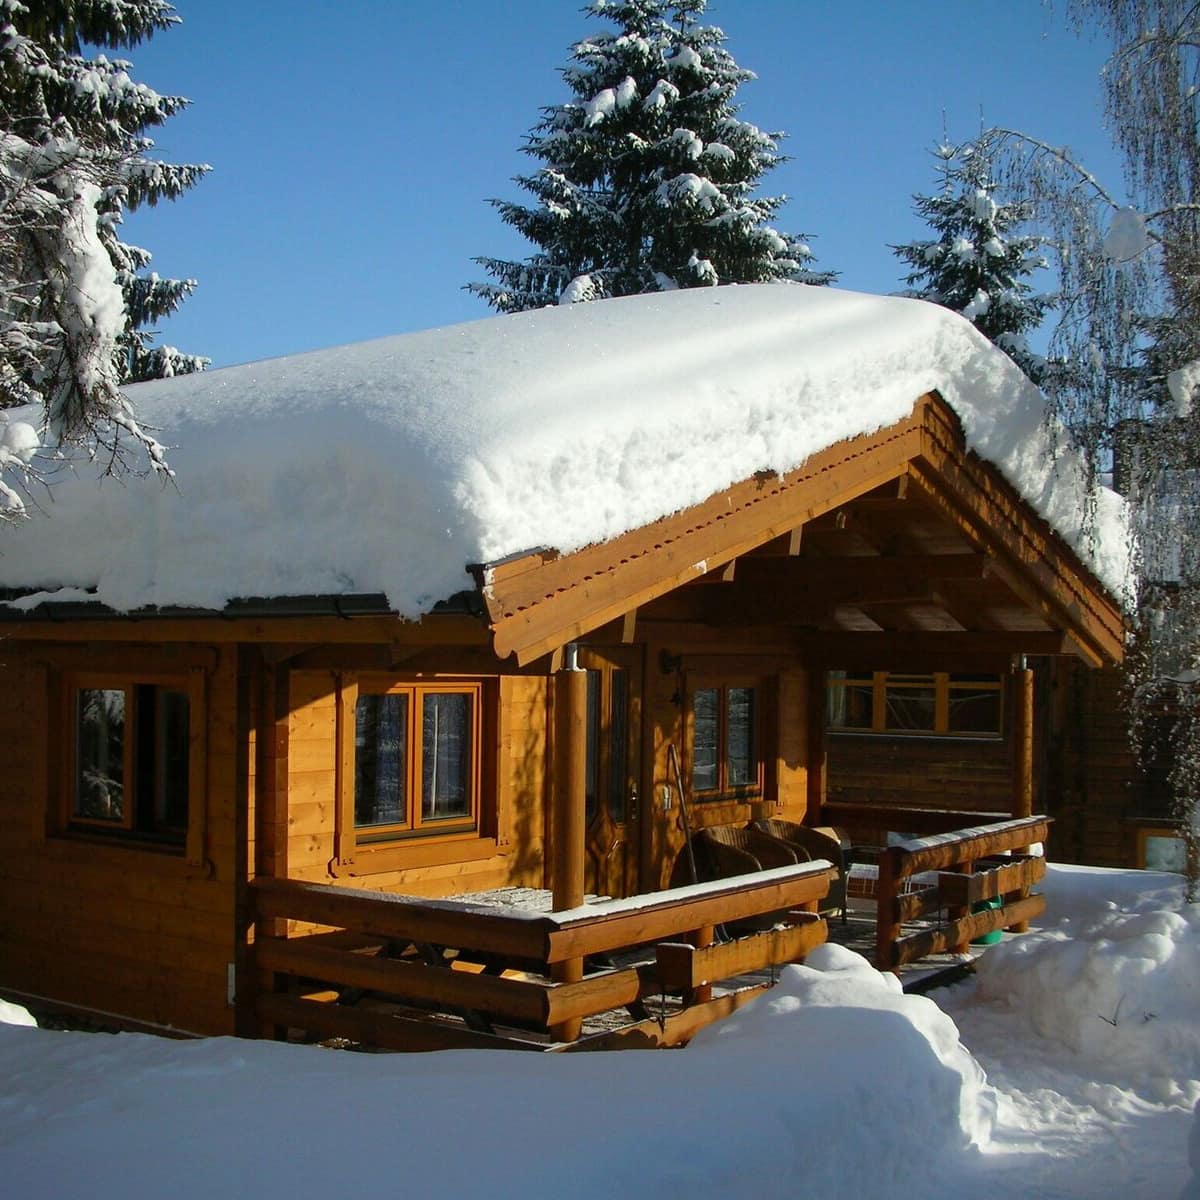 Ferienhaus in Österreich in einem Skigebiet – gemütliche Alpenhütte aus Holz in dickem Schnee